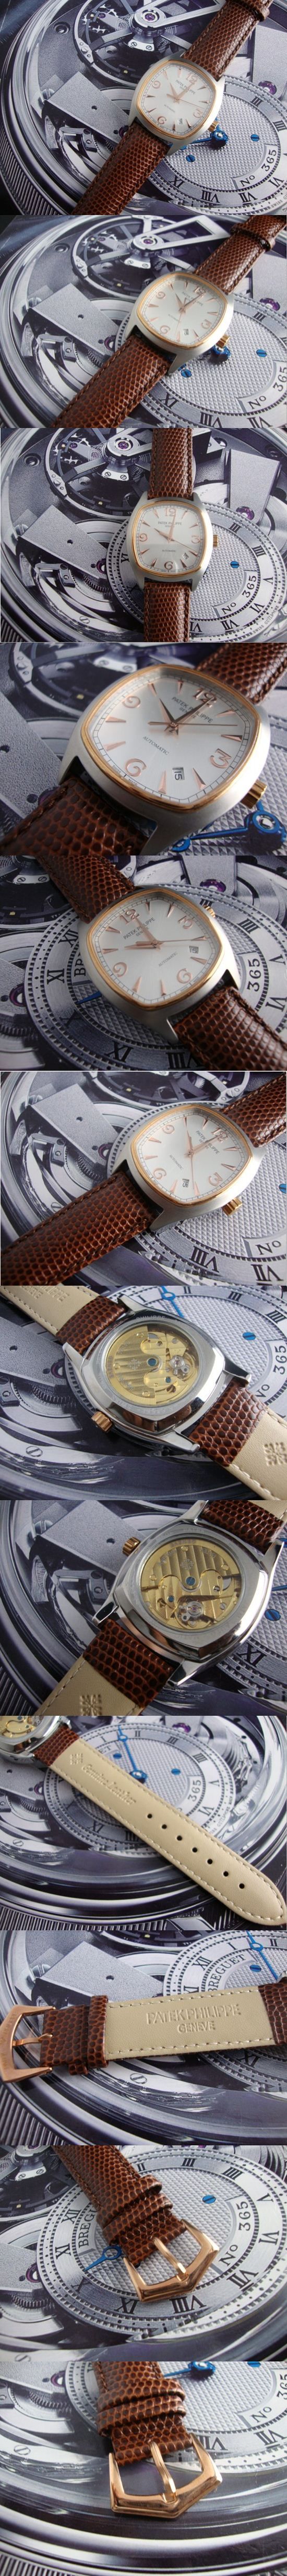 おしゃれなブランド時計がPATEK PHILIPPE-パテック フィリップ腕時計 パテック フィリップ 男/女腕時計 PATEK-PHILIPPE-N-013A を提供します.